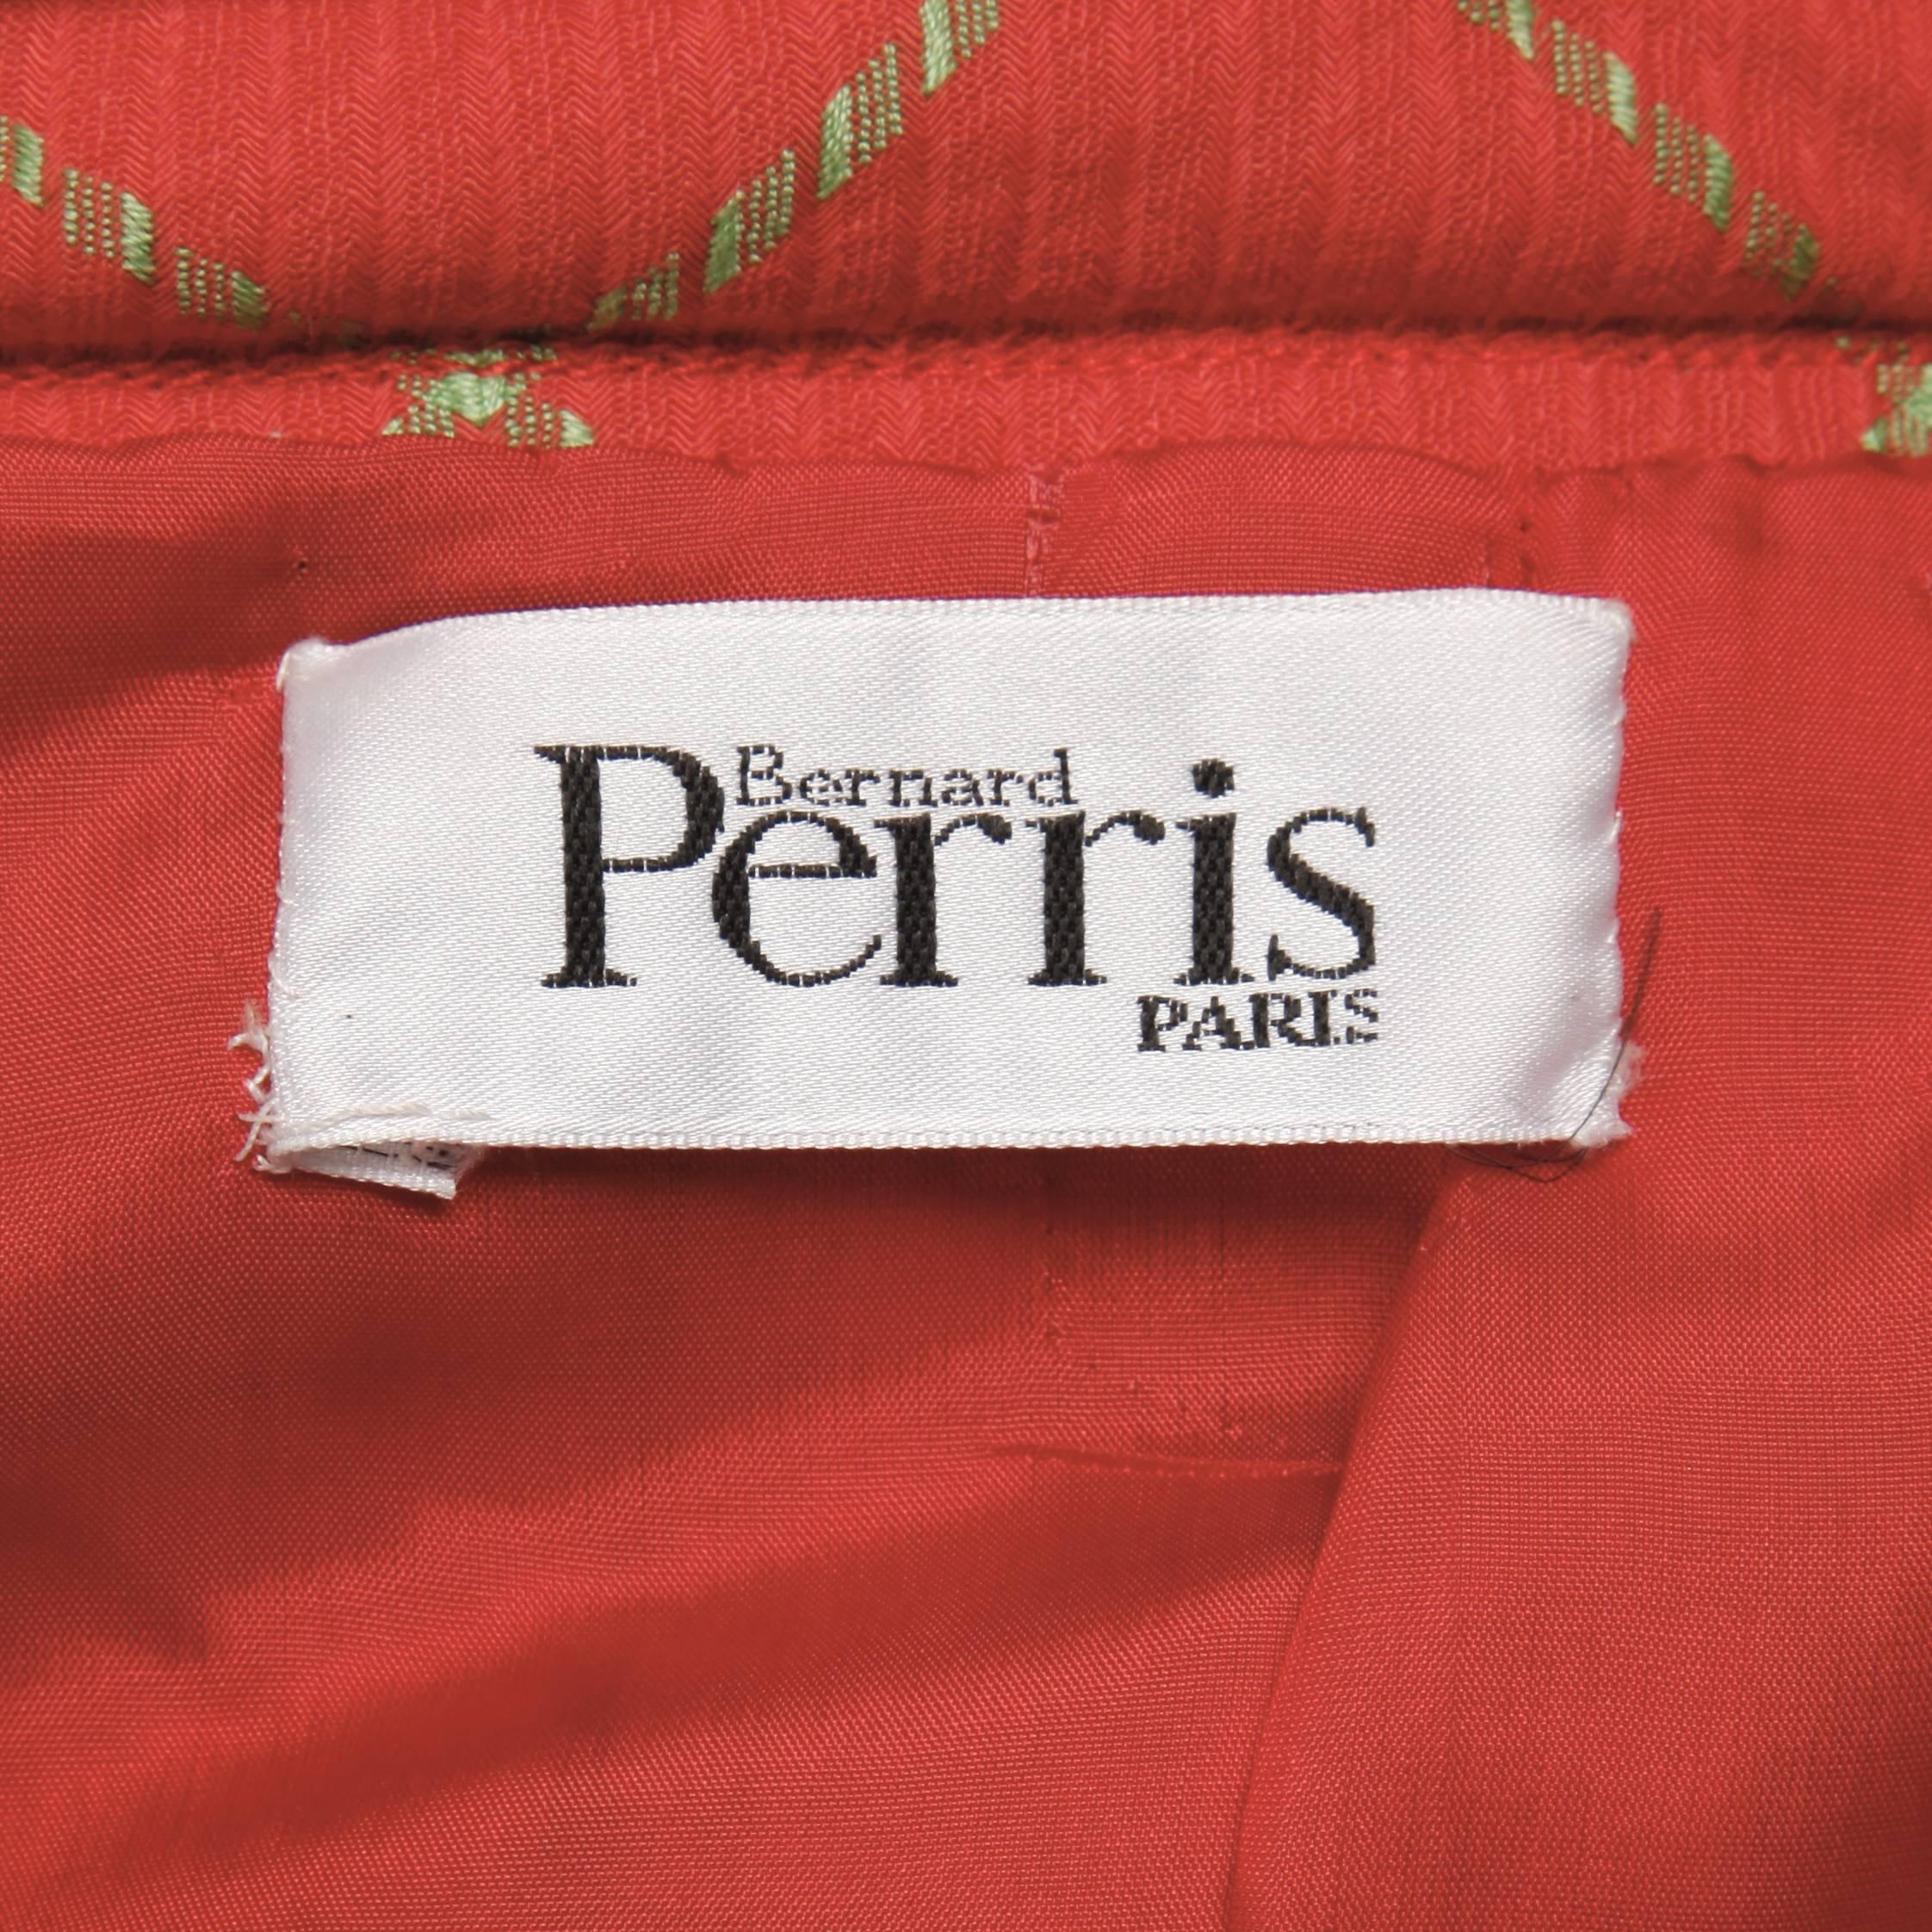 Magnifique tailleur jupe vintage de Bernard Perris dans un plaid rouge corail et vert céleri pâle. Le Fabrice ressemble à un mélange de cachemire et de laine. Entièrement doublé. Fermeture à glissière sur le devant de la veste et fermeture à